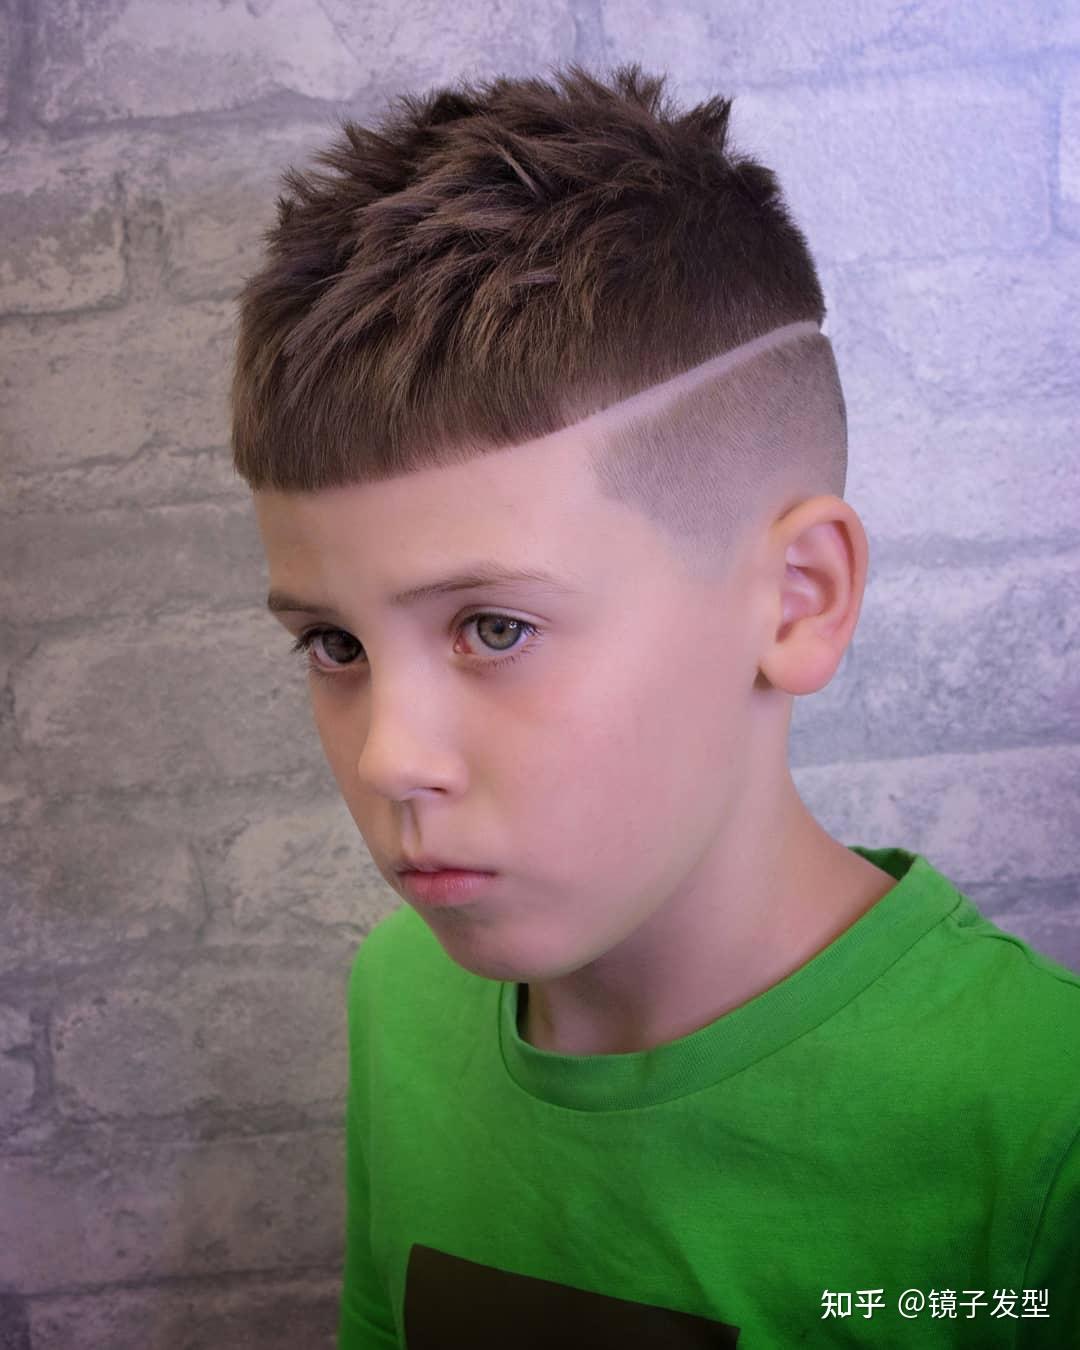 圆脸型的小男孩可以试试这款发型,两侧推成超短发,清爽又利落,头顶